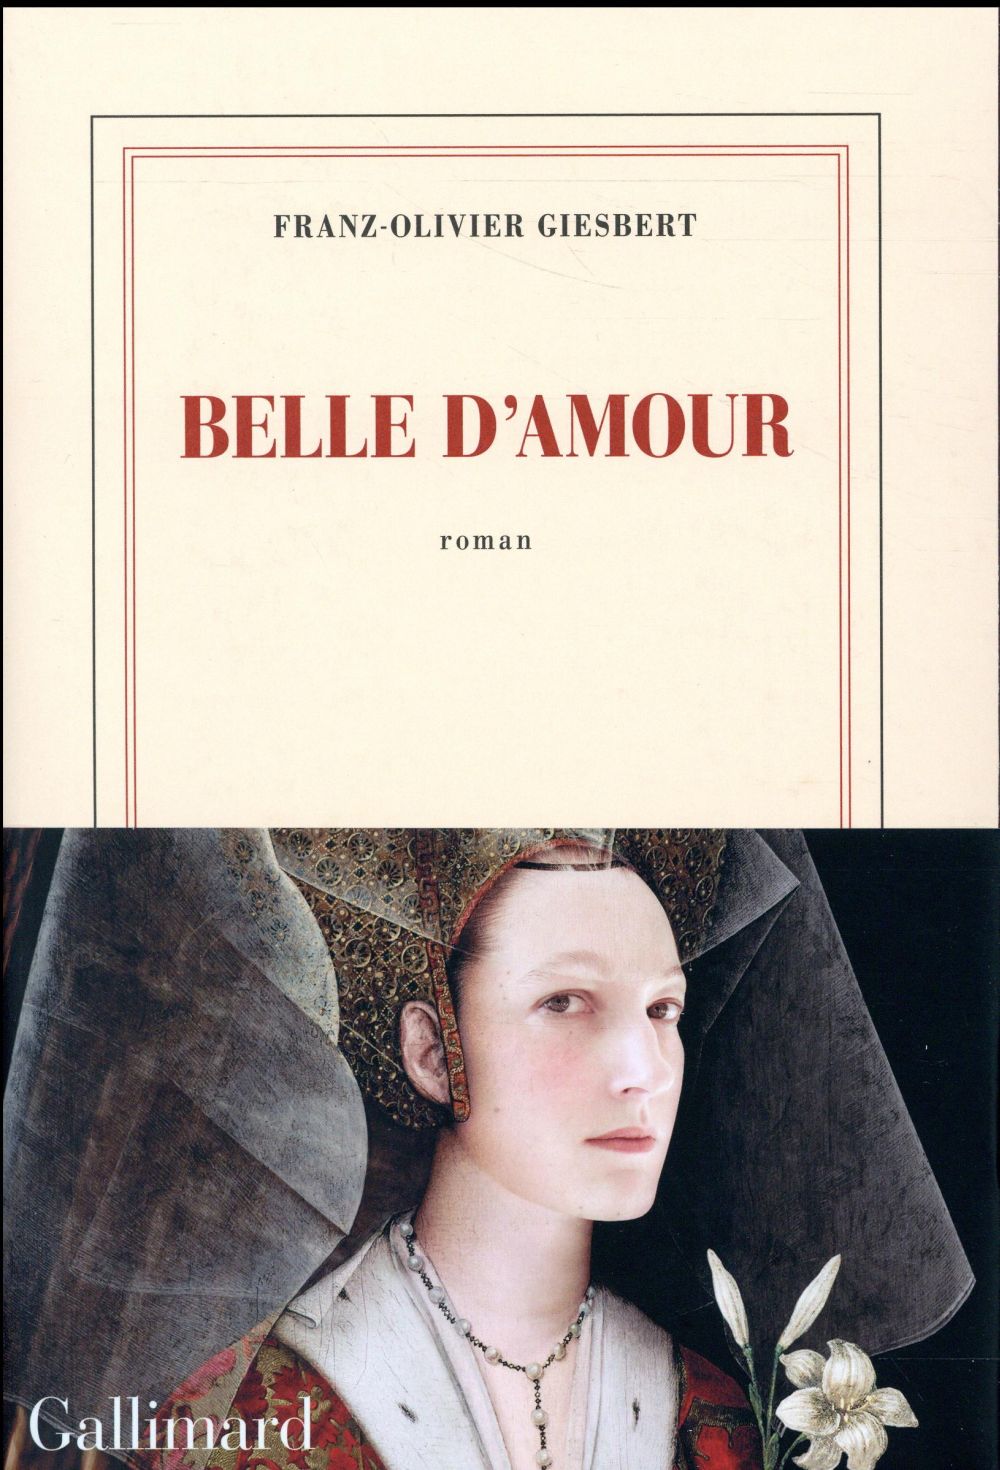 BELLE D'AMOUR